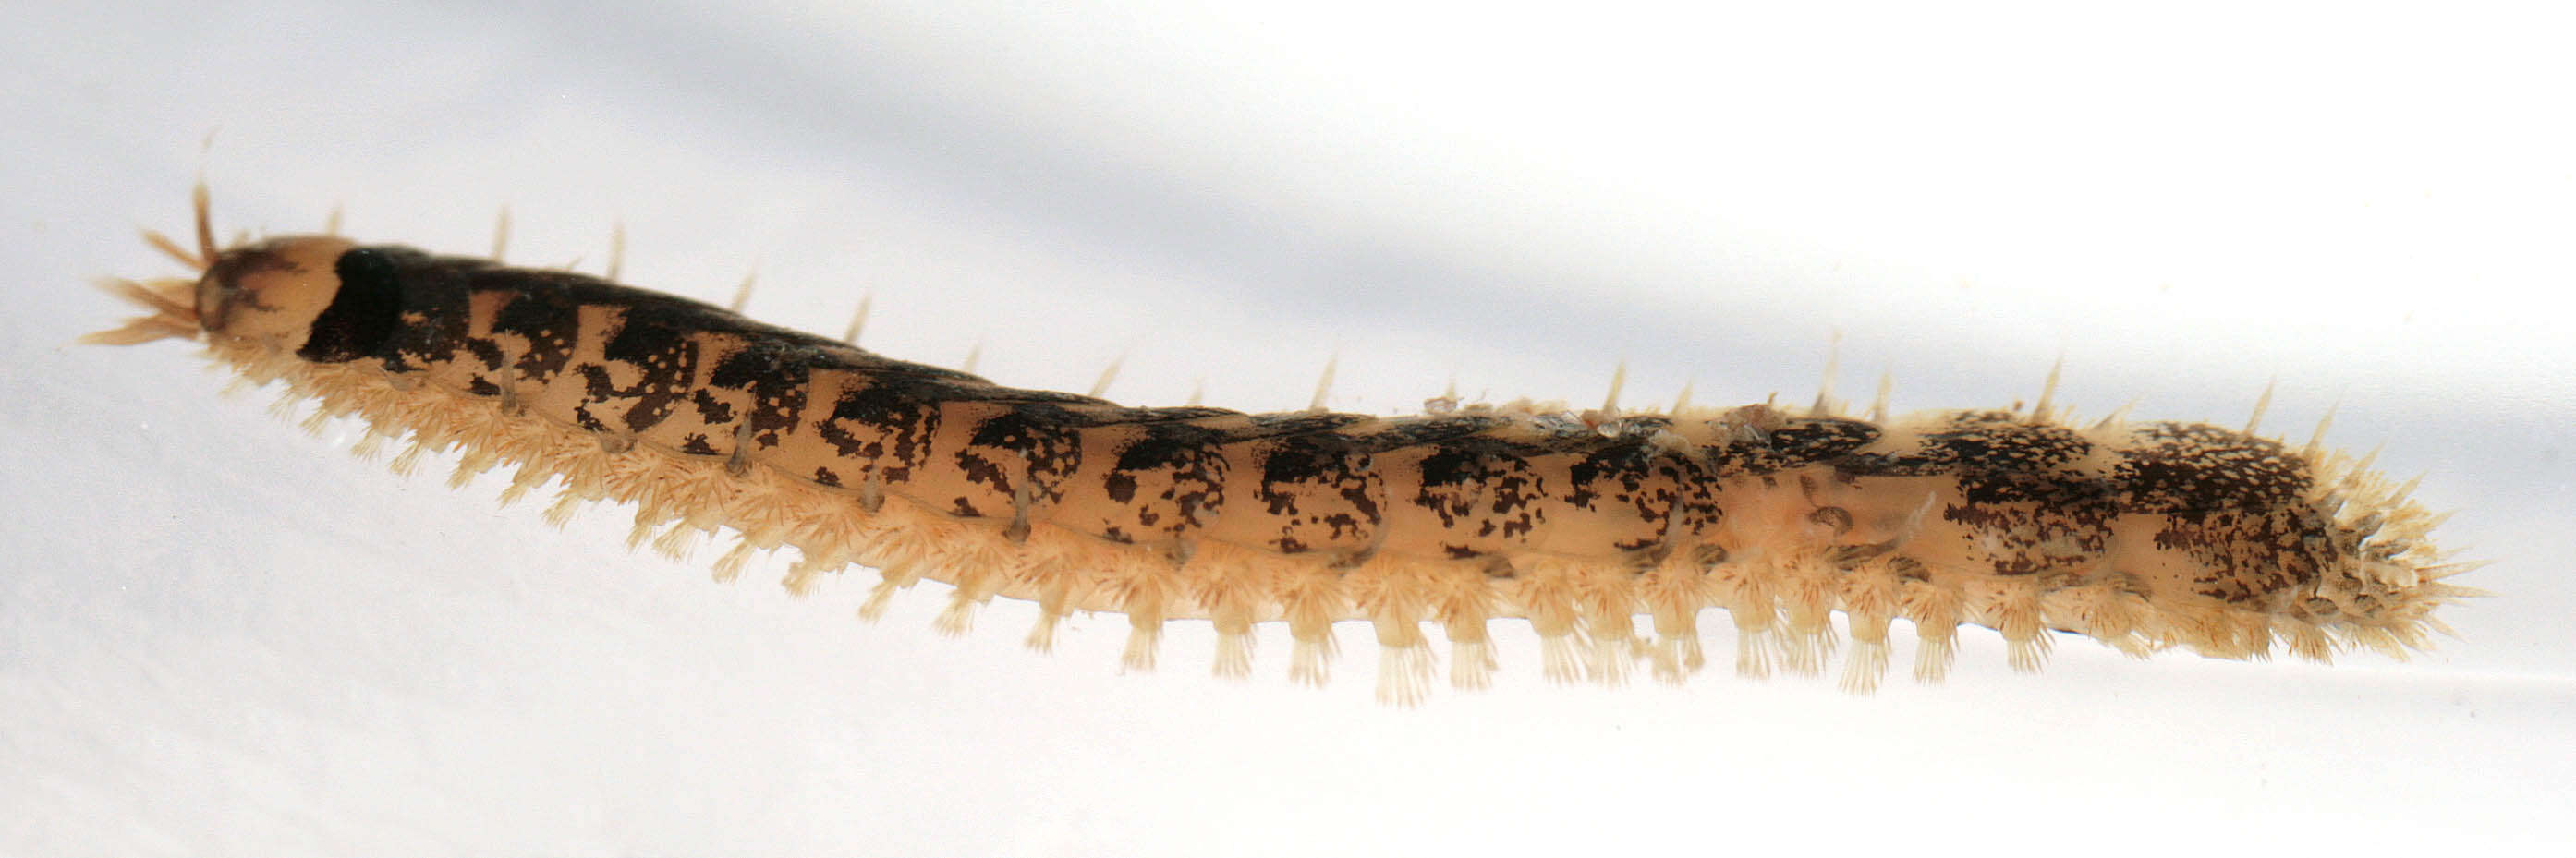 Sivun Malmgrenia lunulata (Delle Chiaje 1830) kuva